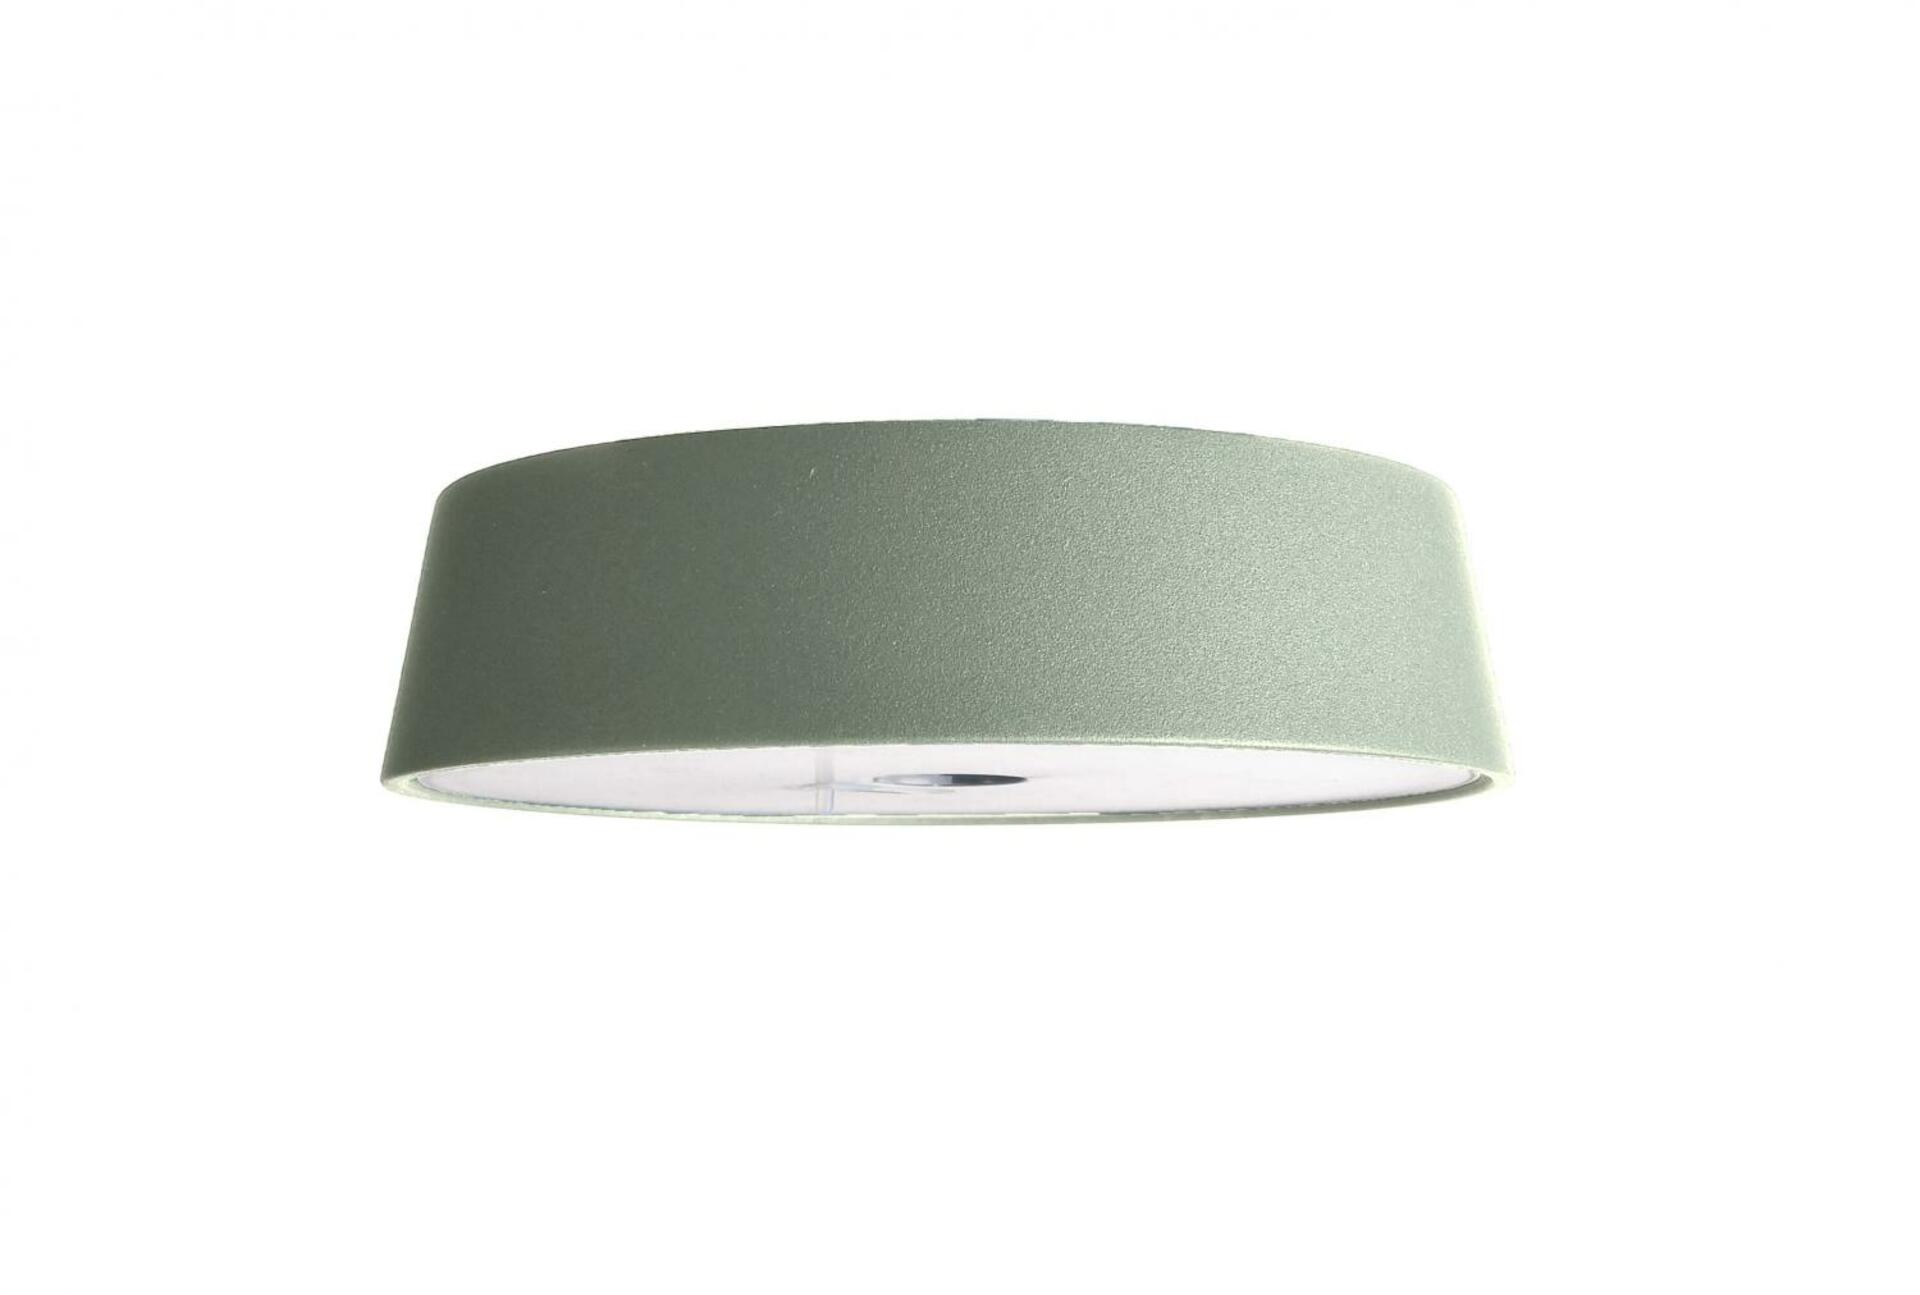 Light Impressions Deko-Light stolní lampa hlava pro magnetsvítidla Miram zelená 3,7V DC 2,20 W 3000 K 196 lm 346037